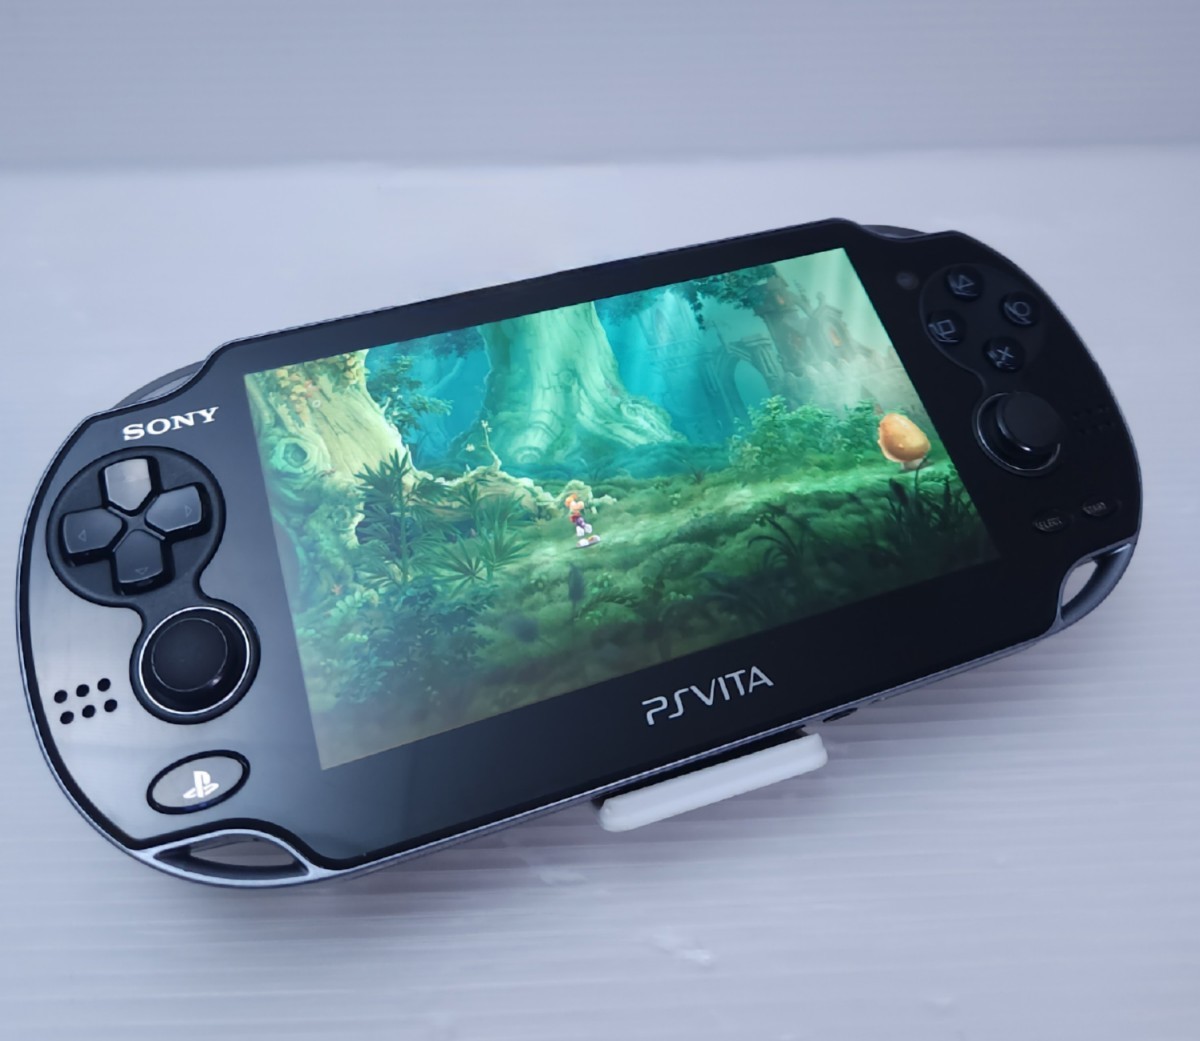 レトロゲーム 動作品 PS Vita PlayStation Vita Black 3G / Wi-Fiモデル 黒 PCH-1000 本体のみ 4GB メモリカード (O1)